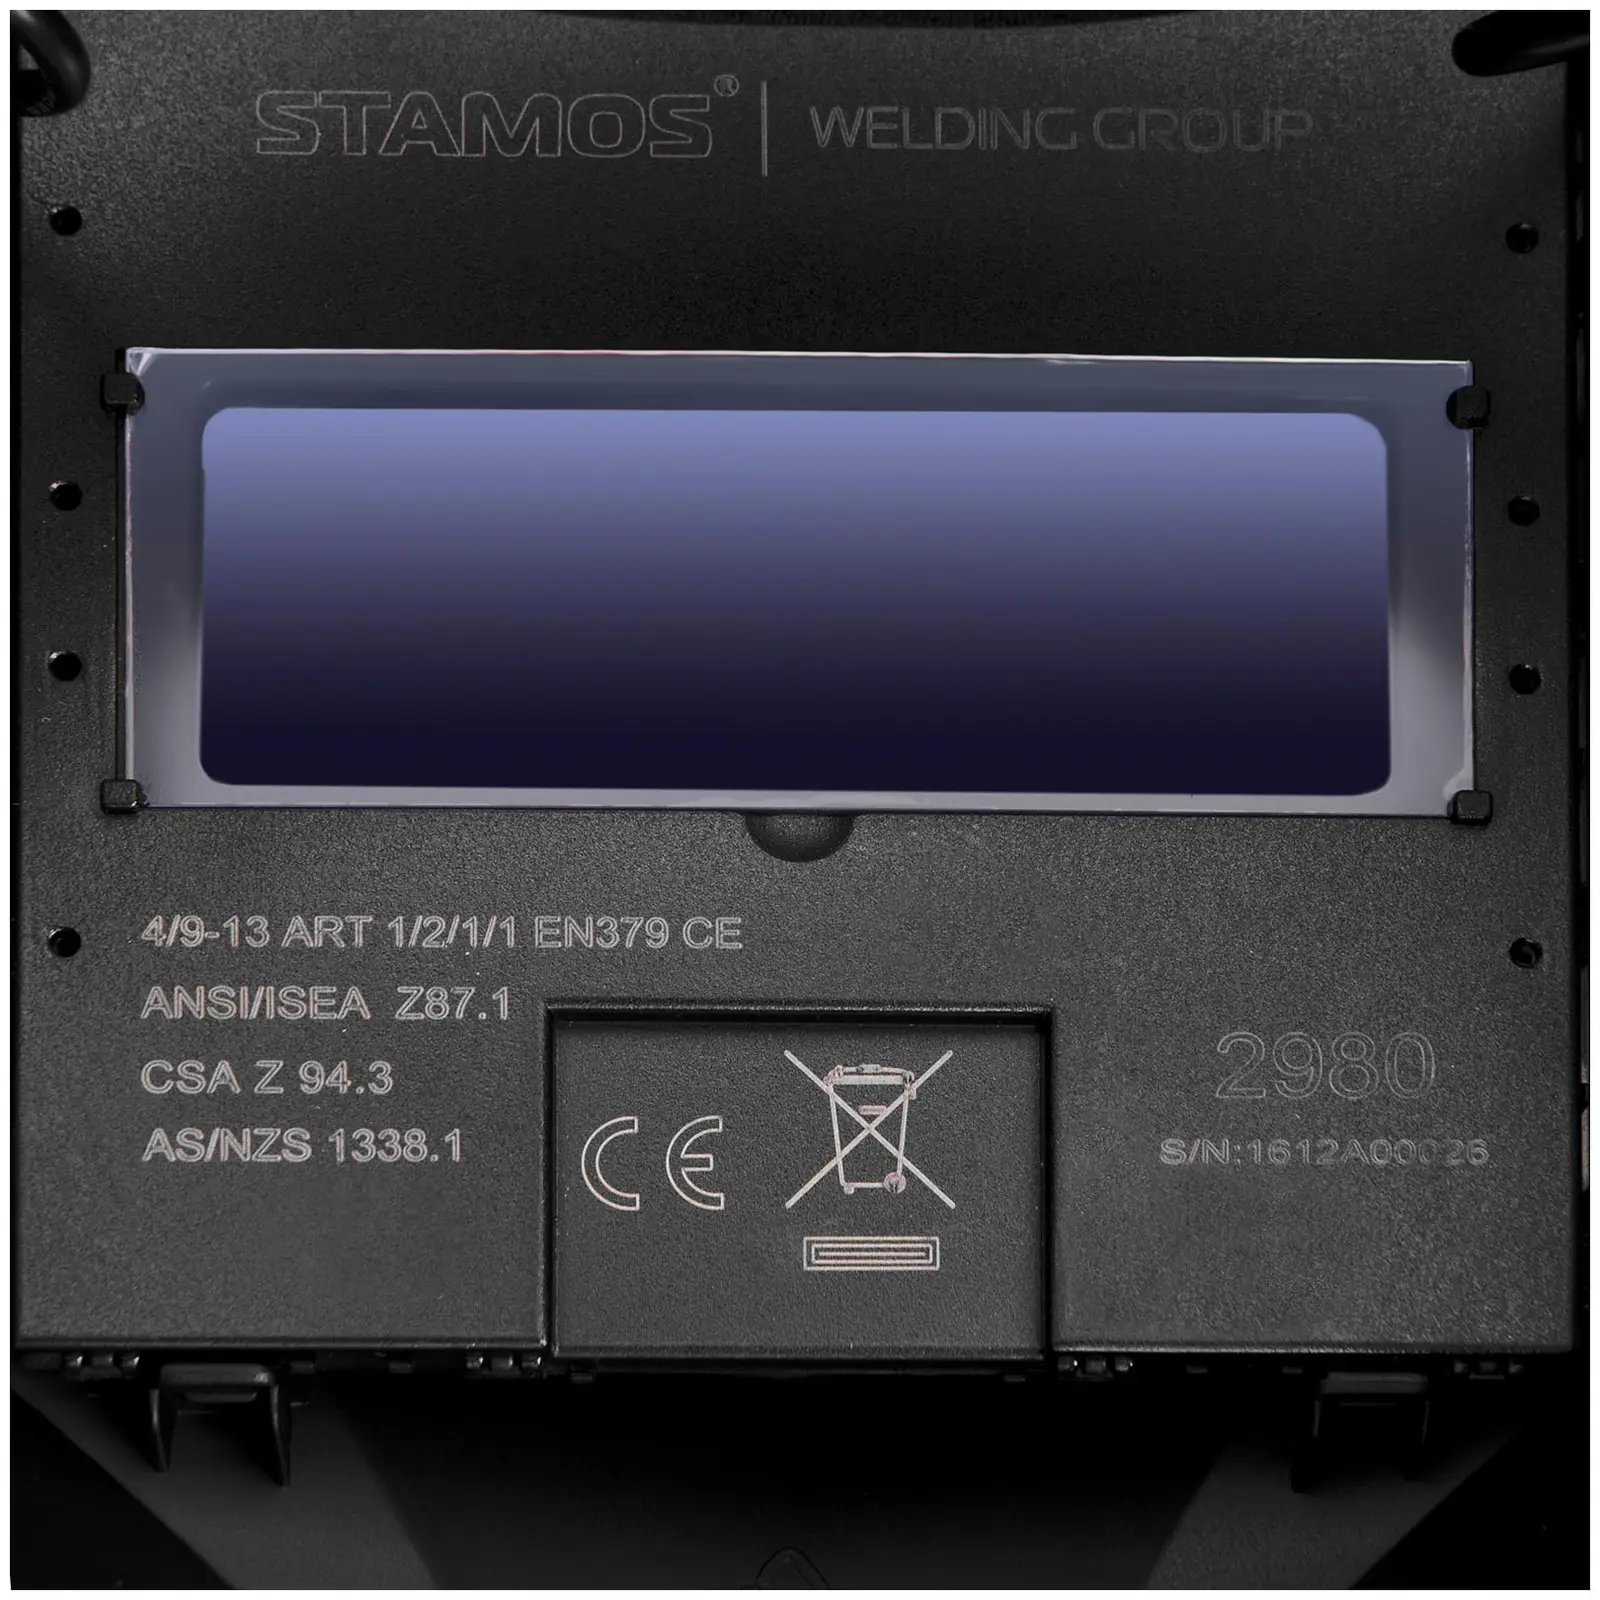 Schweißset Elektroden Schweißgerät – 200 A – Hot Start - IGBT + Schweißhelm – Operator